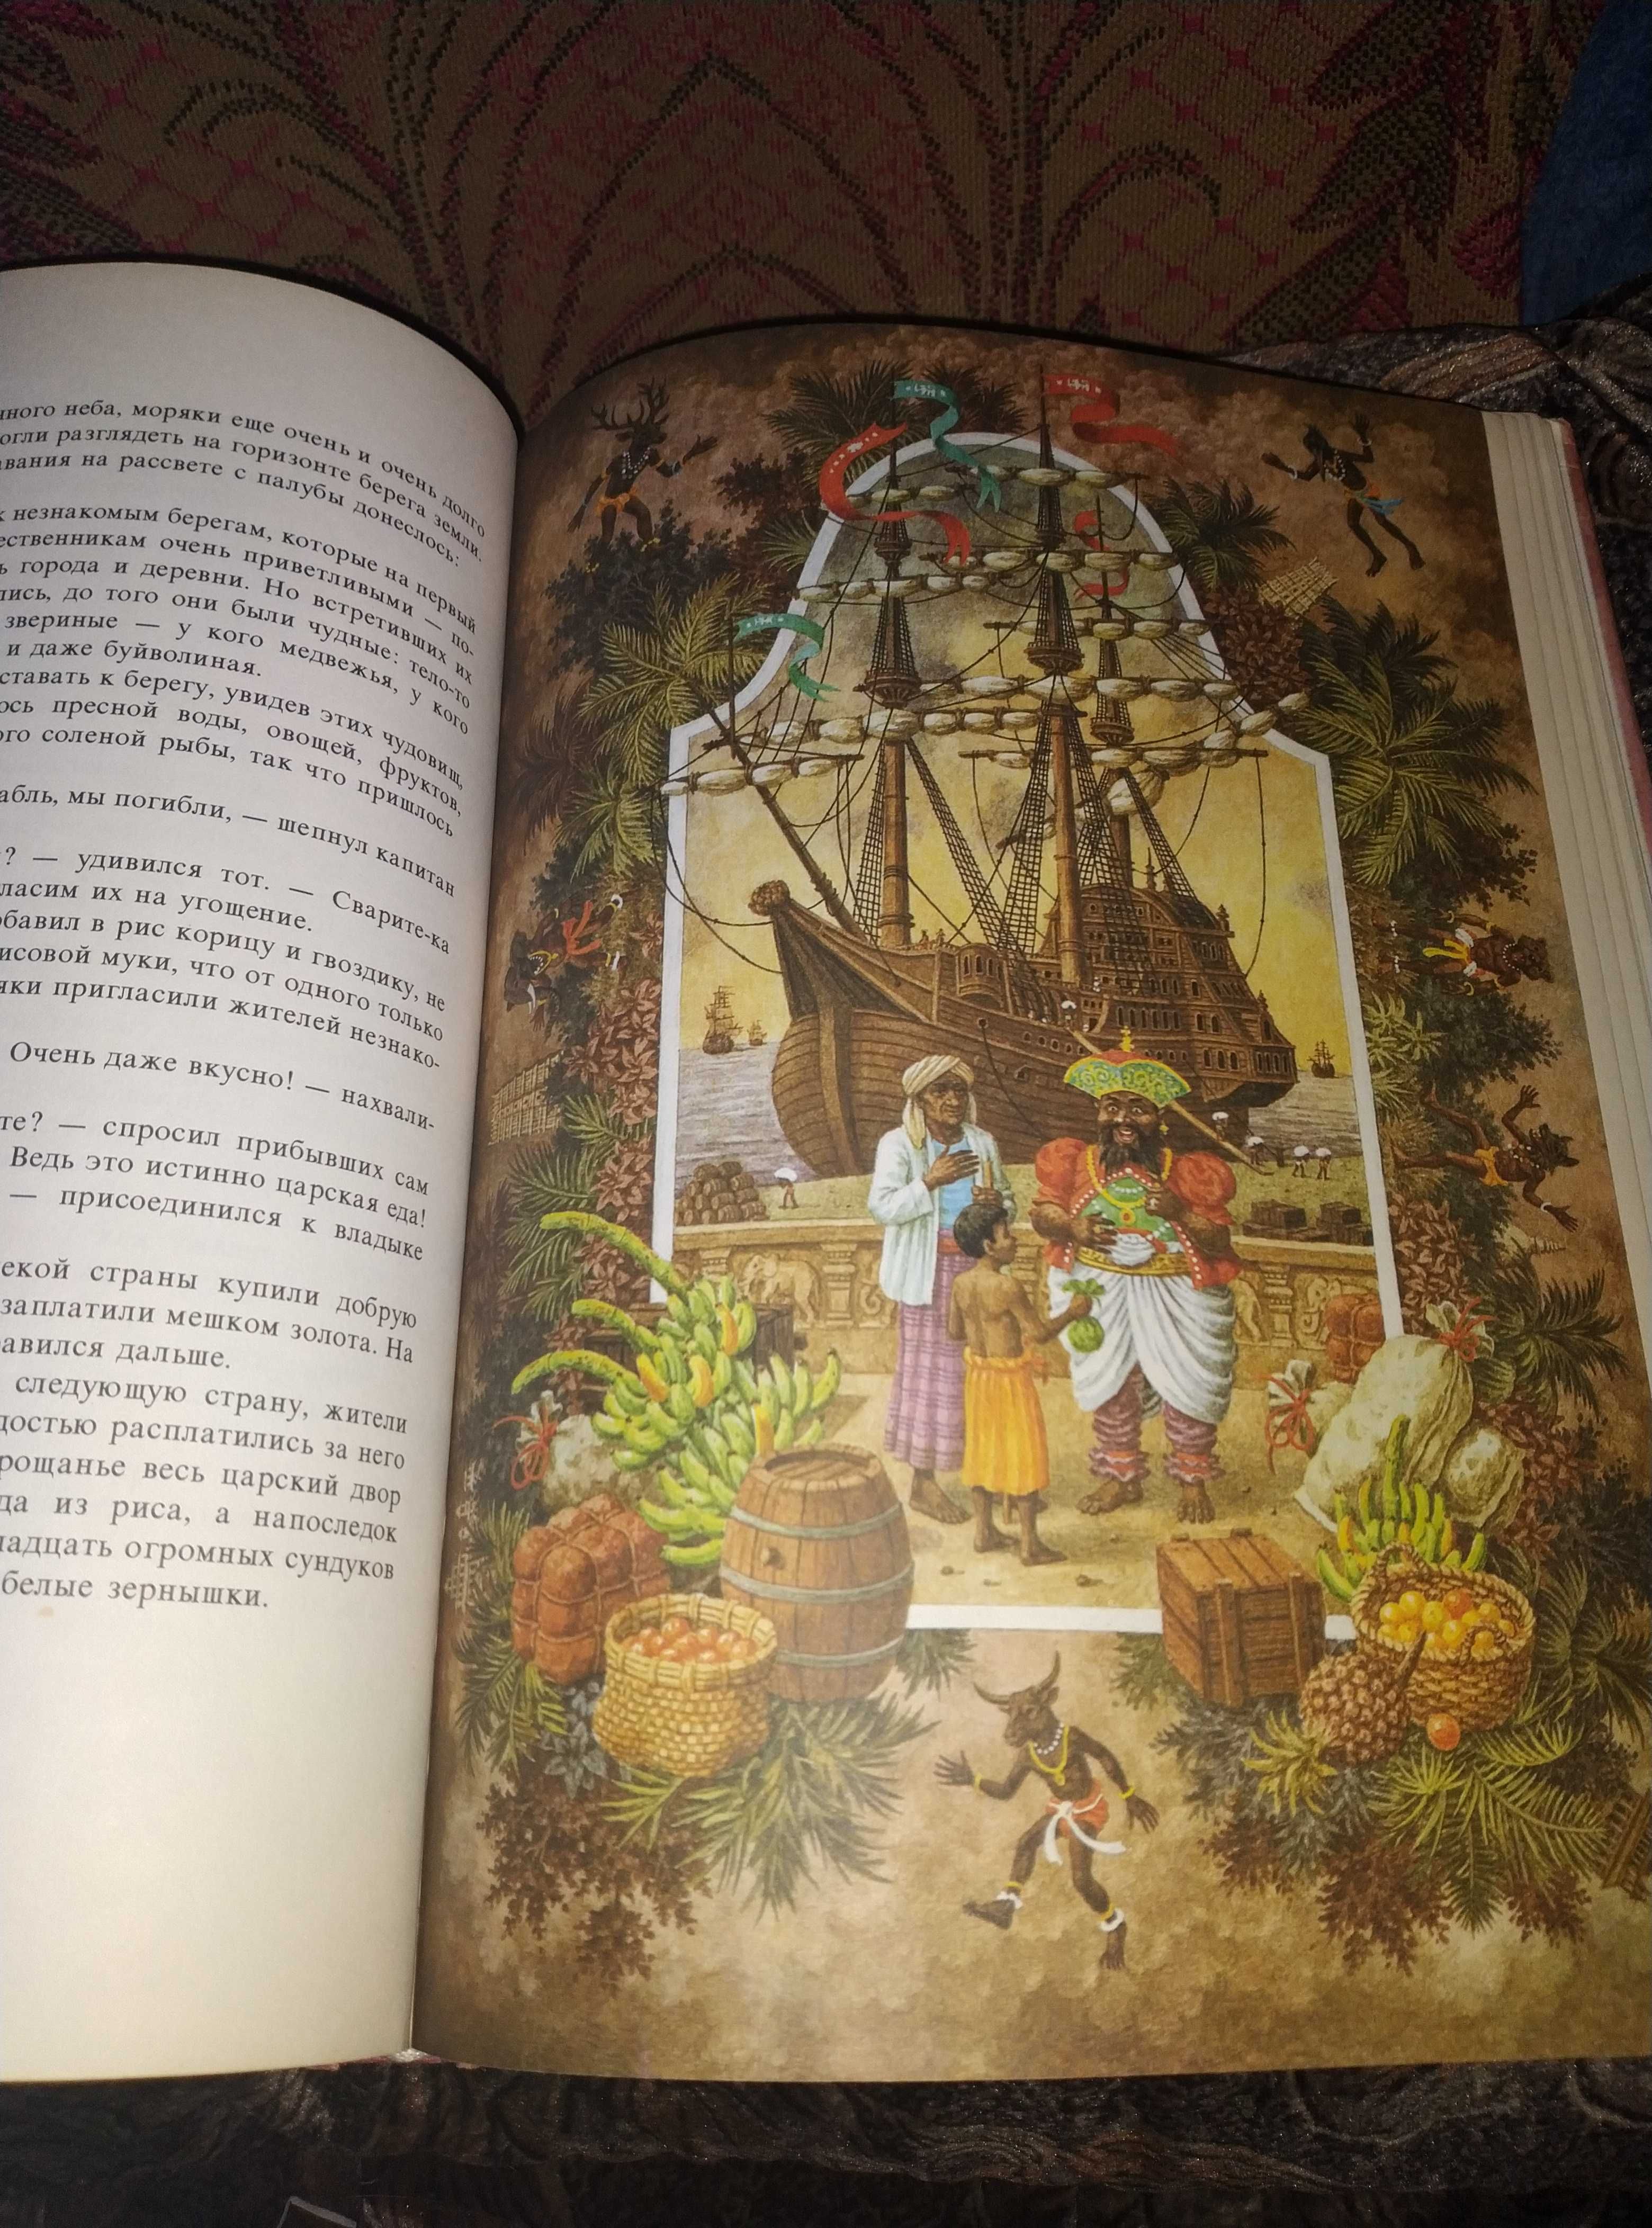 Детская книга Сказки острова Ланки